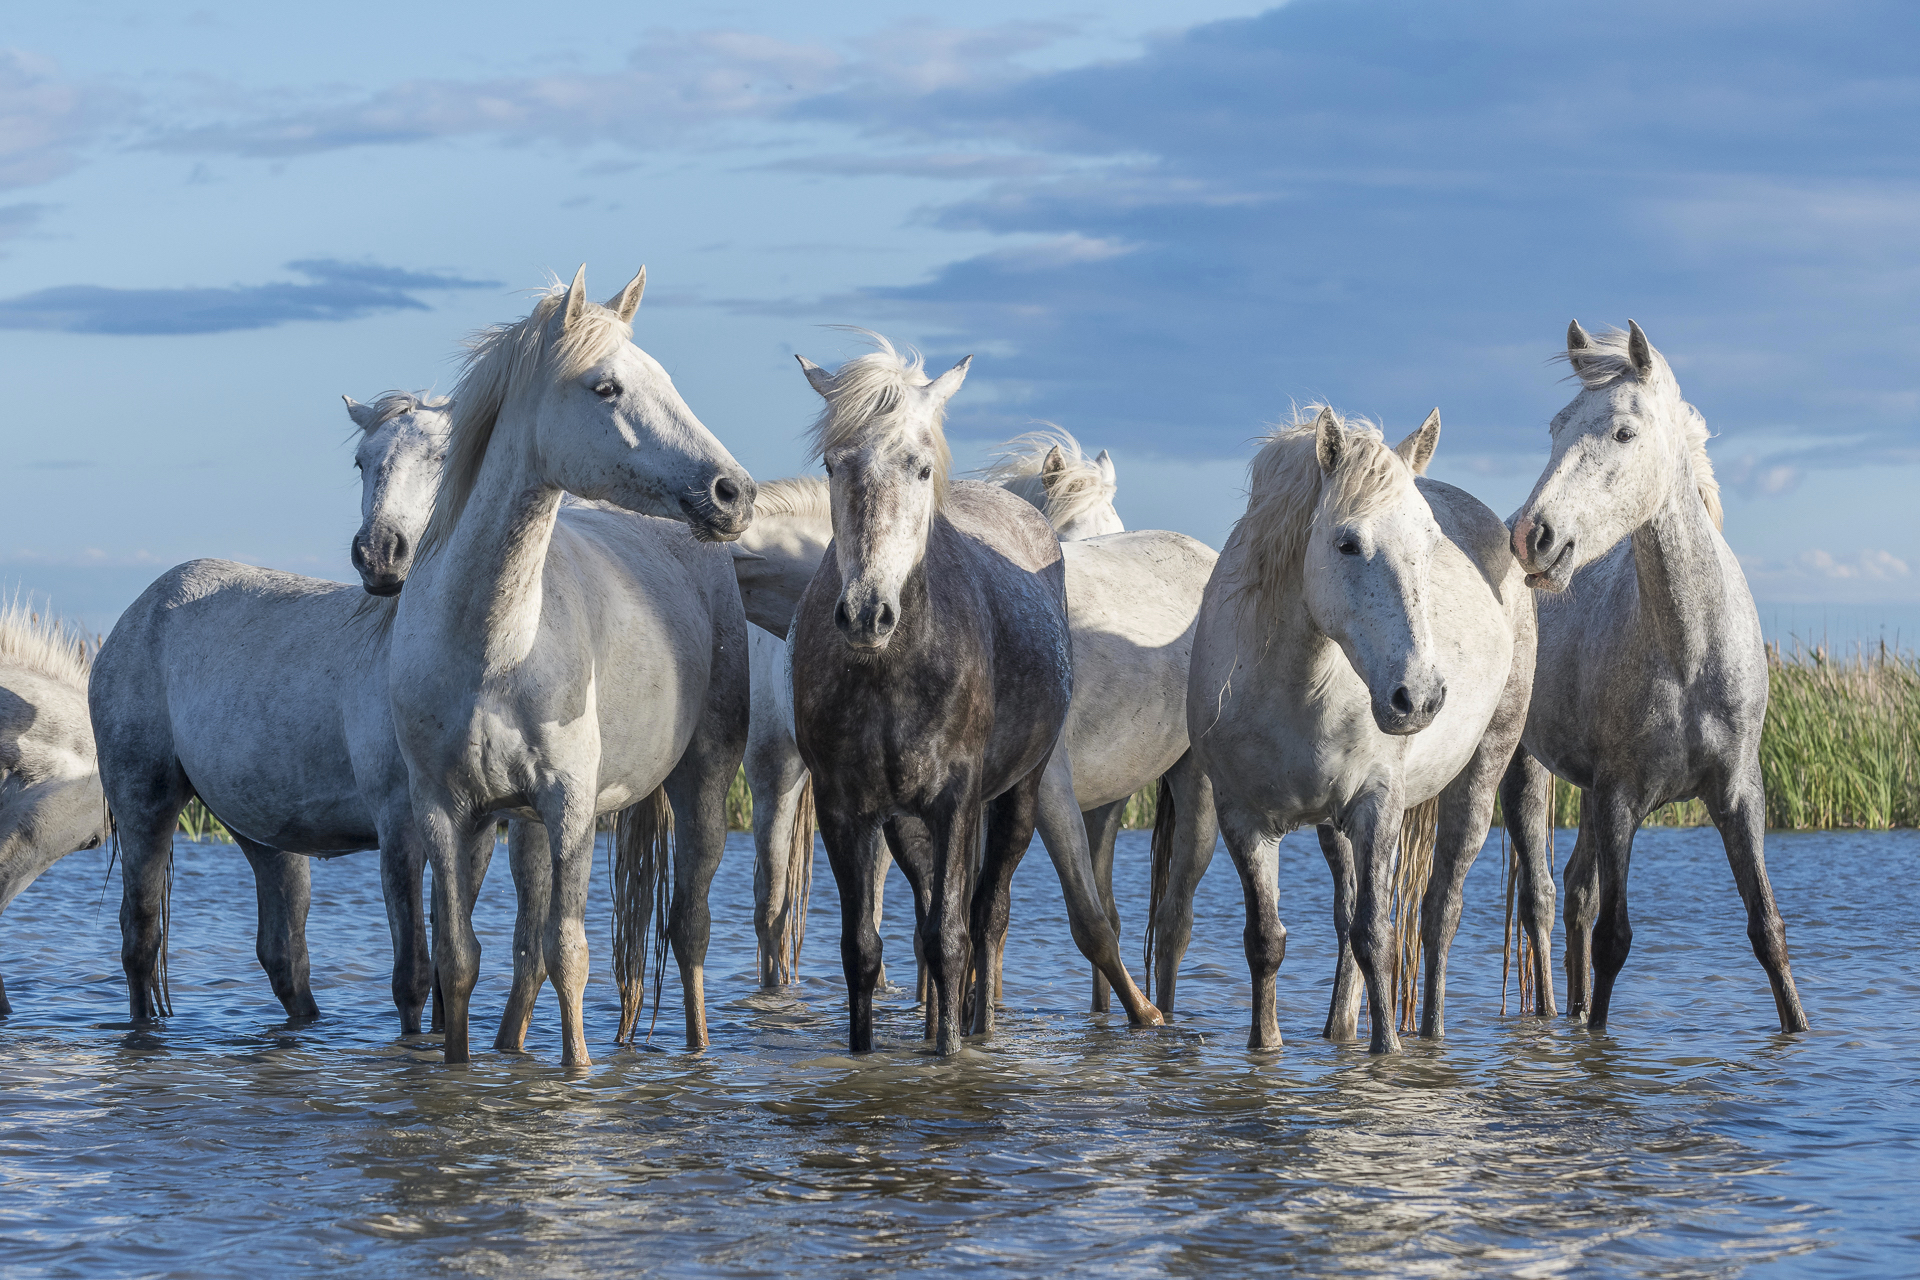 Camargue horses standing in a wetland. Parc naturel régional de Camargue. France.